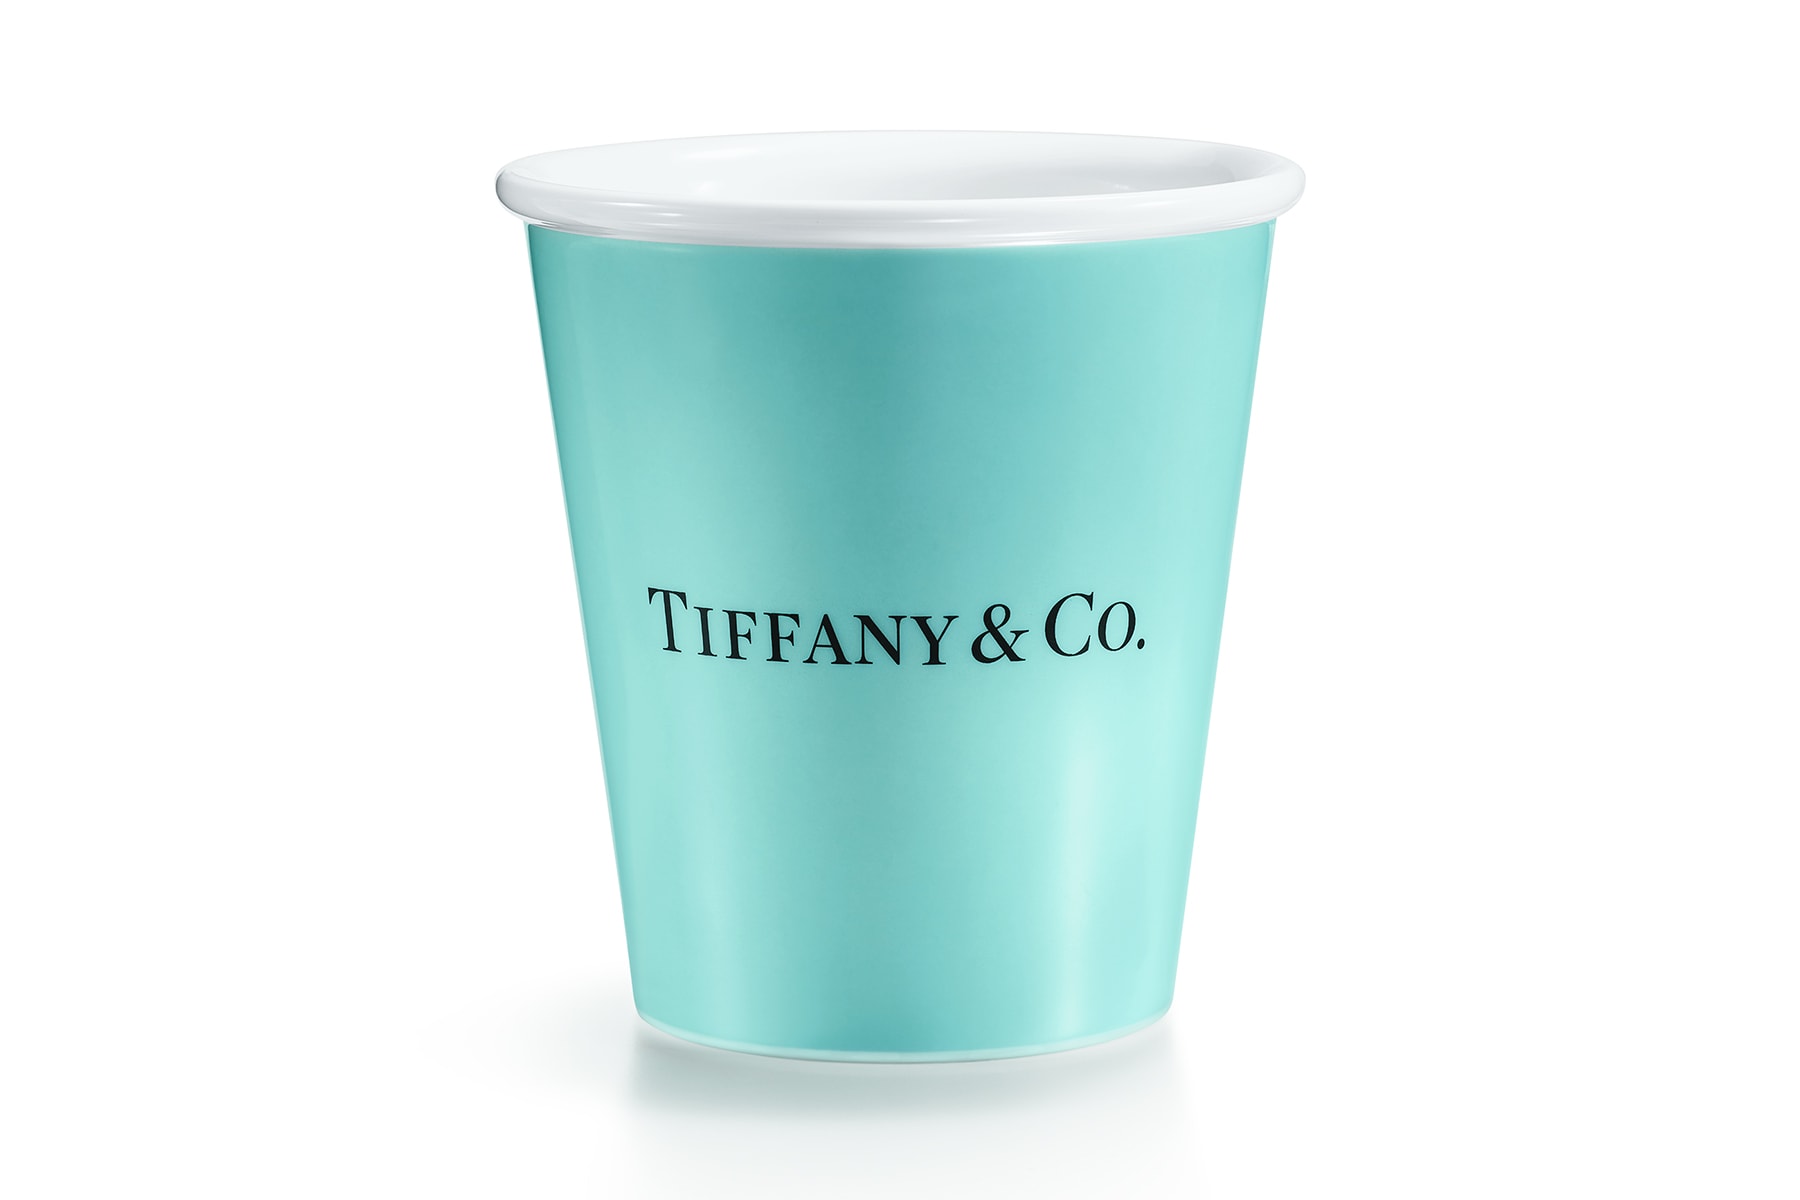 Tiffany & Co. 全新家居與配飾系列